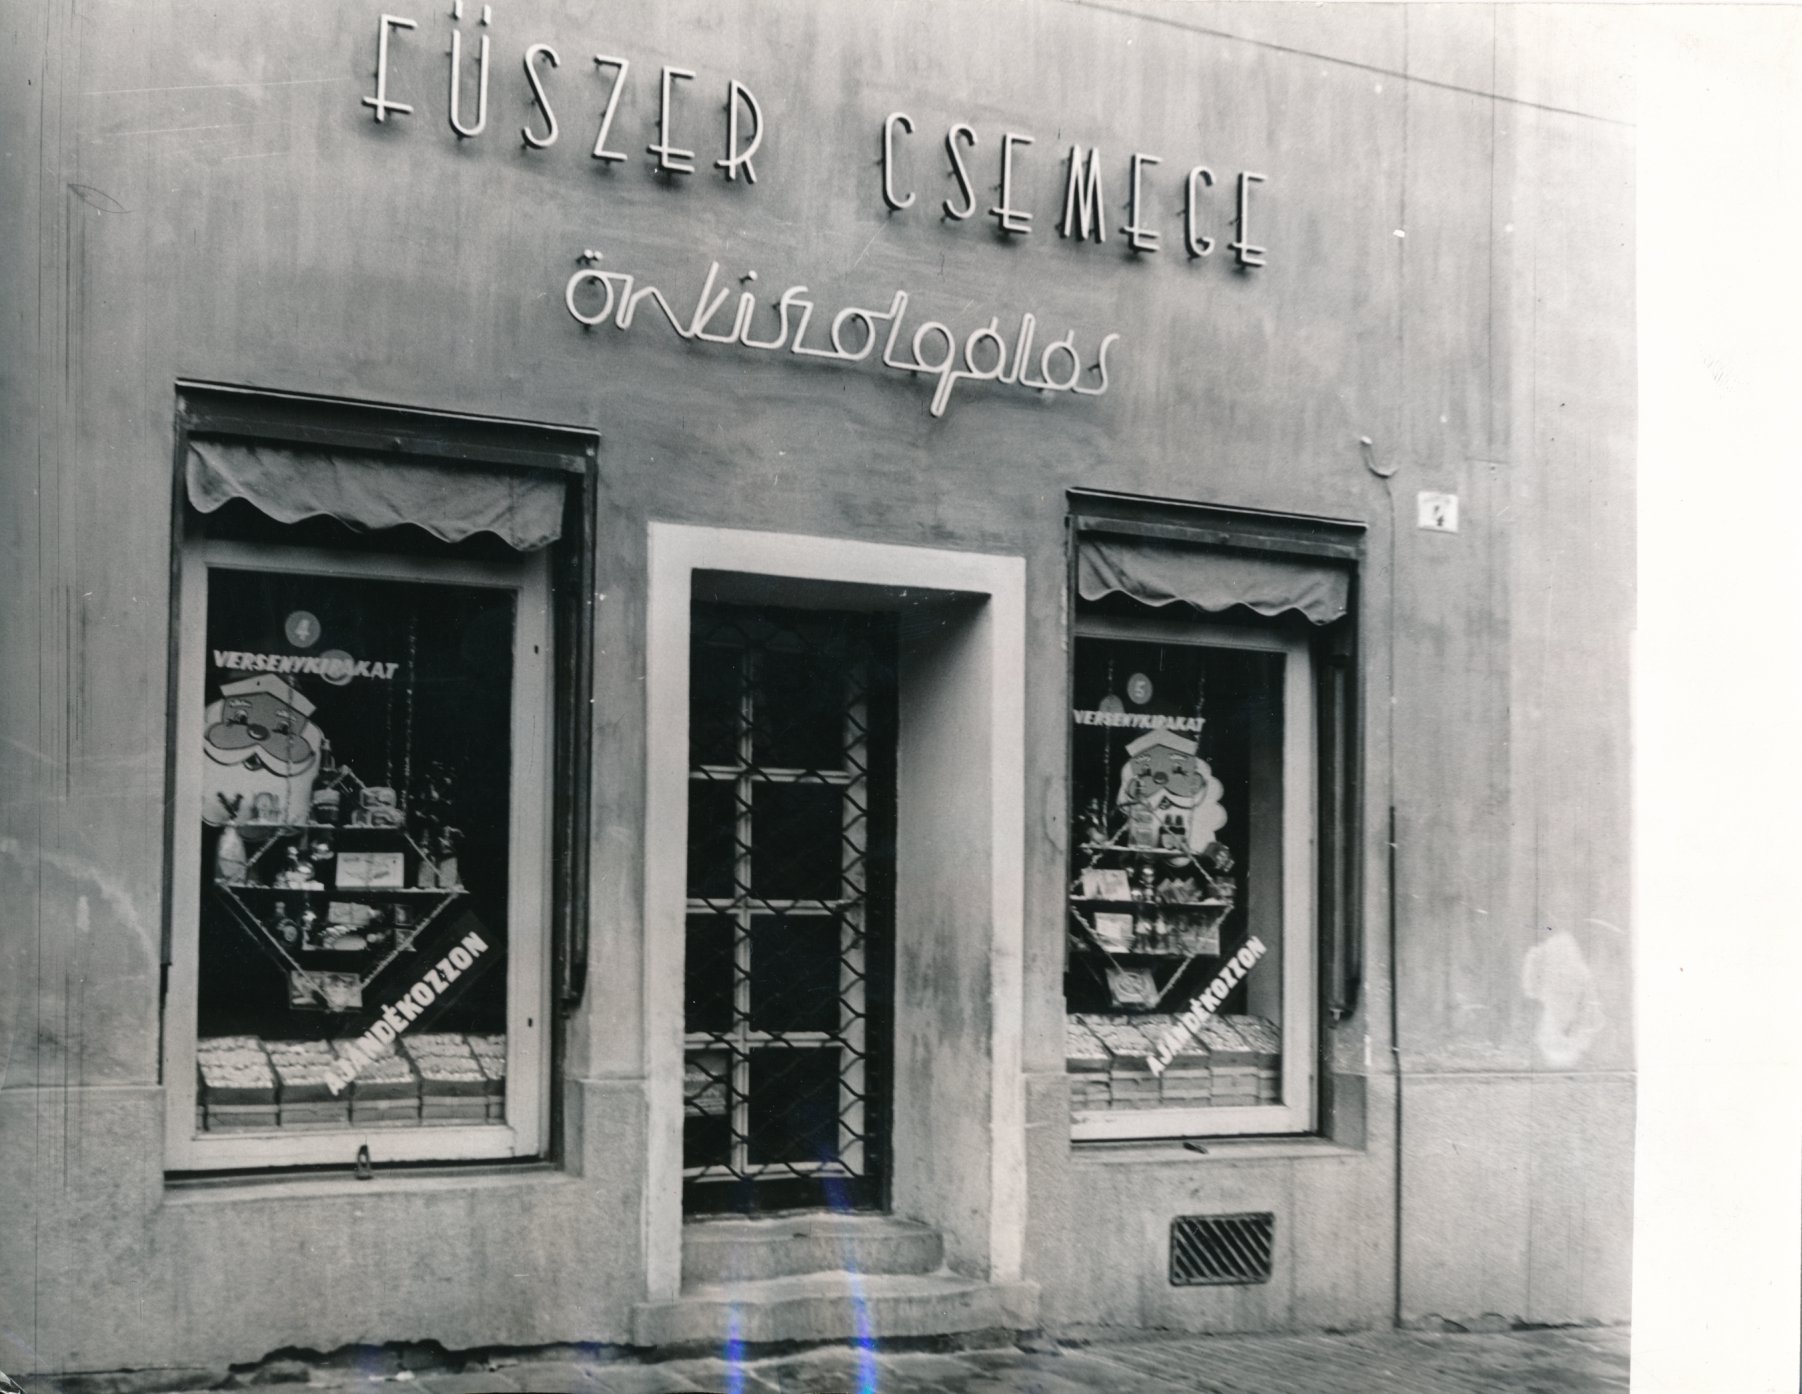 Szentendrei fűszer és csemege üzletről készült fénykép (Ferenczy Múzeumi Centrum CC BY-NC-SA)